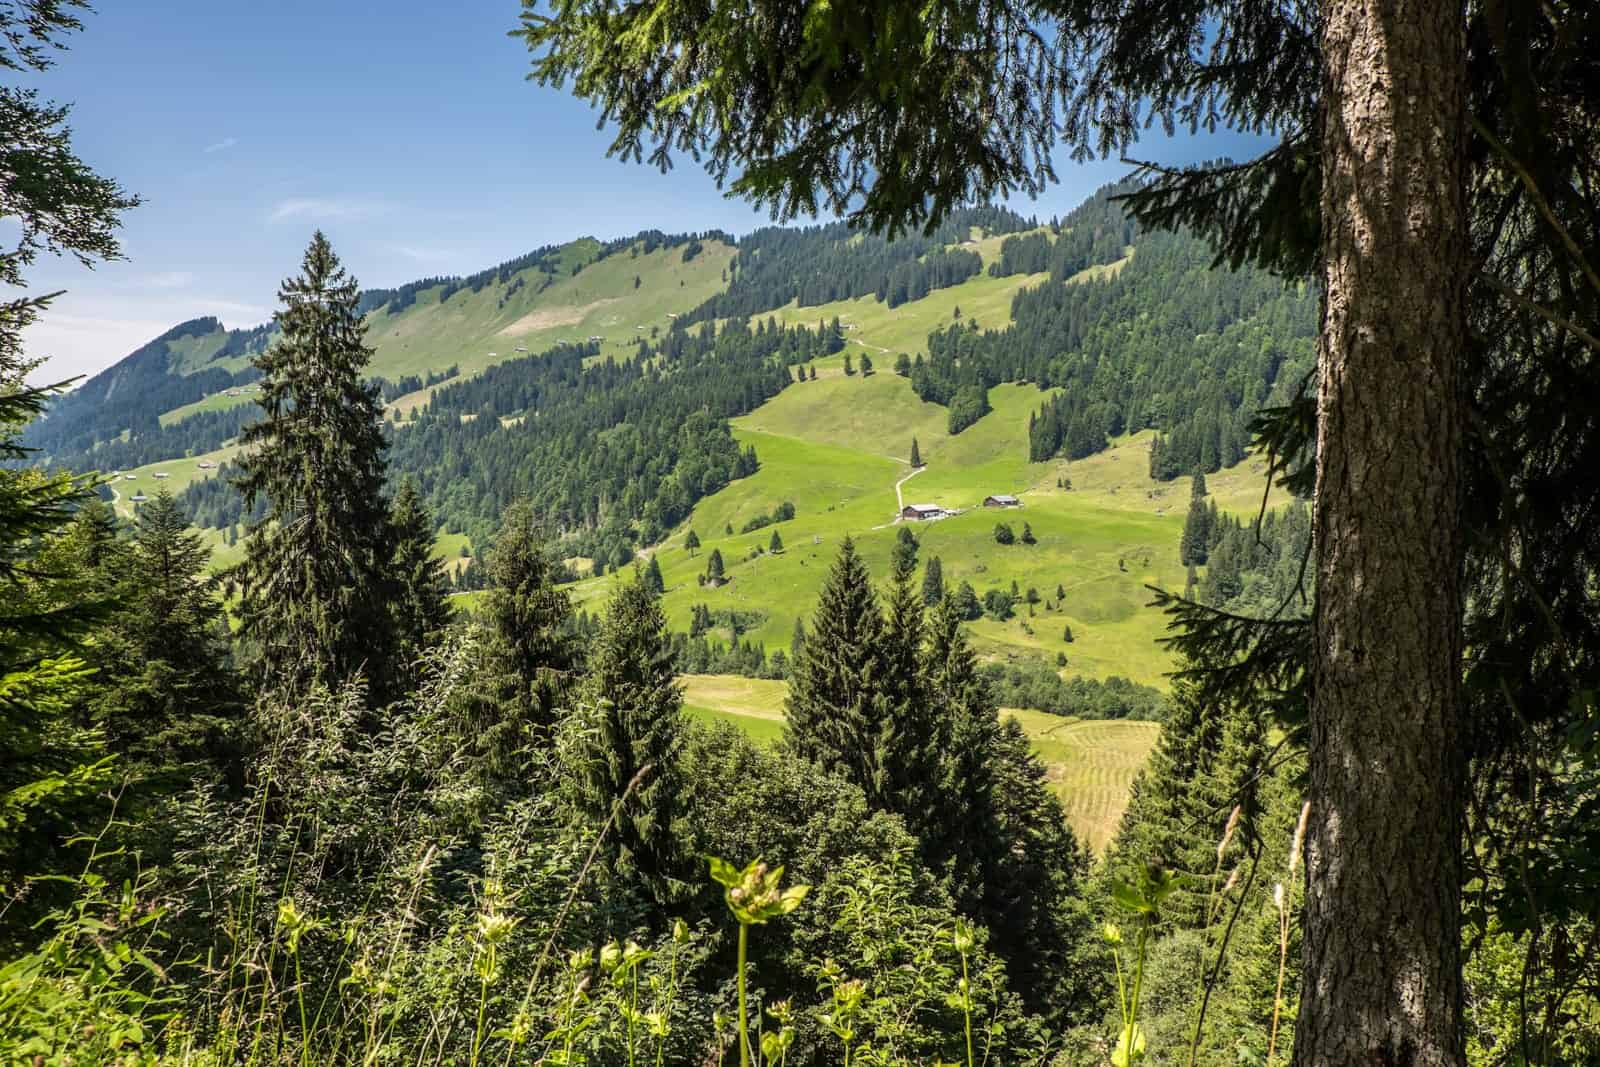 Views from the Vorarlberg alpine while hiking in Bregenzerwald, Austria